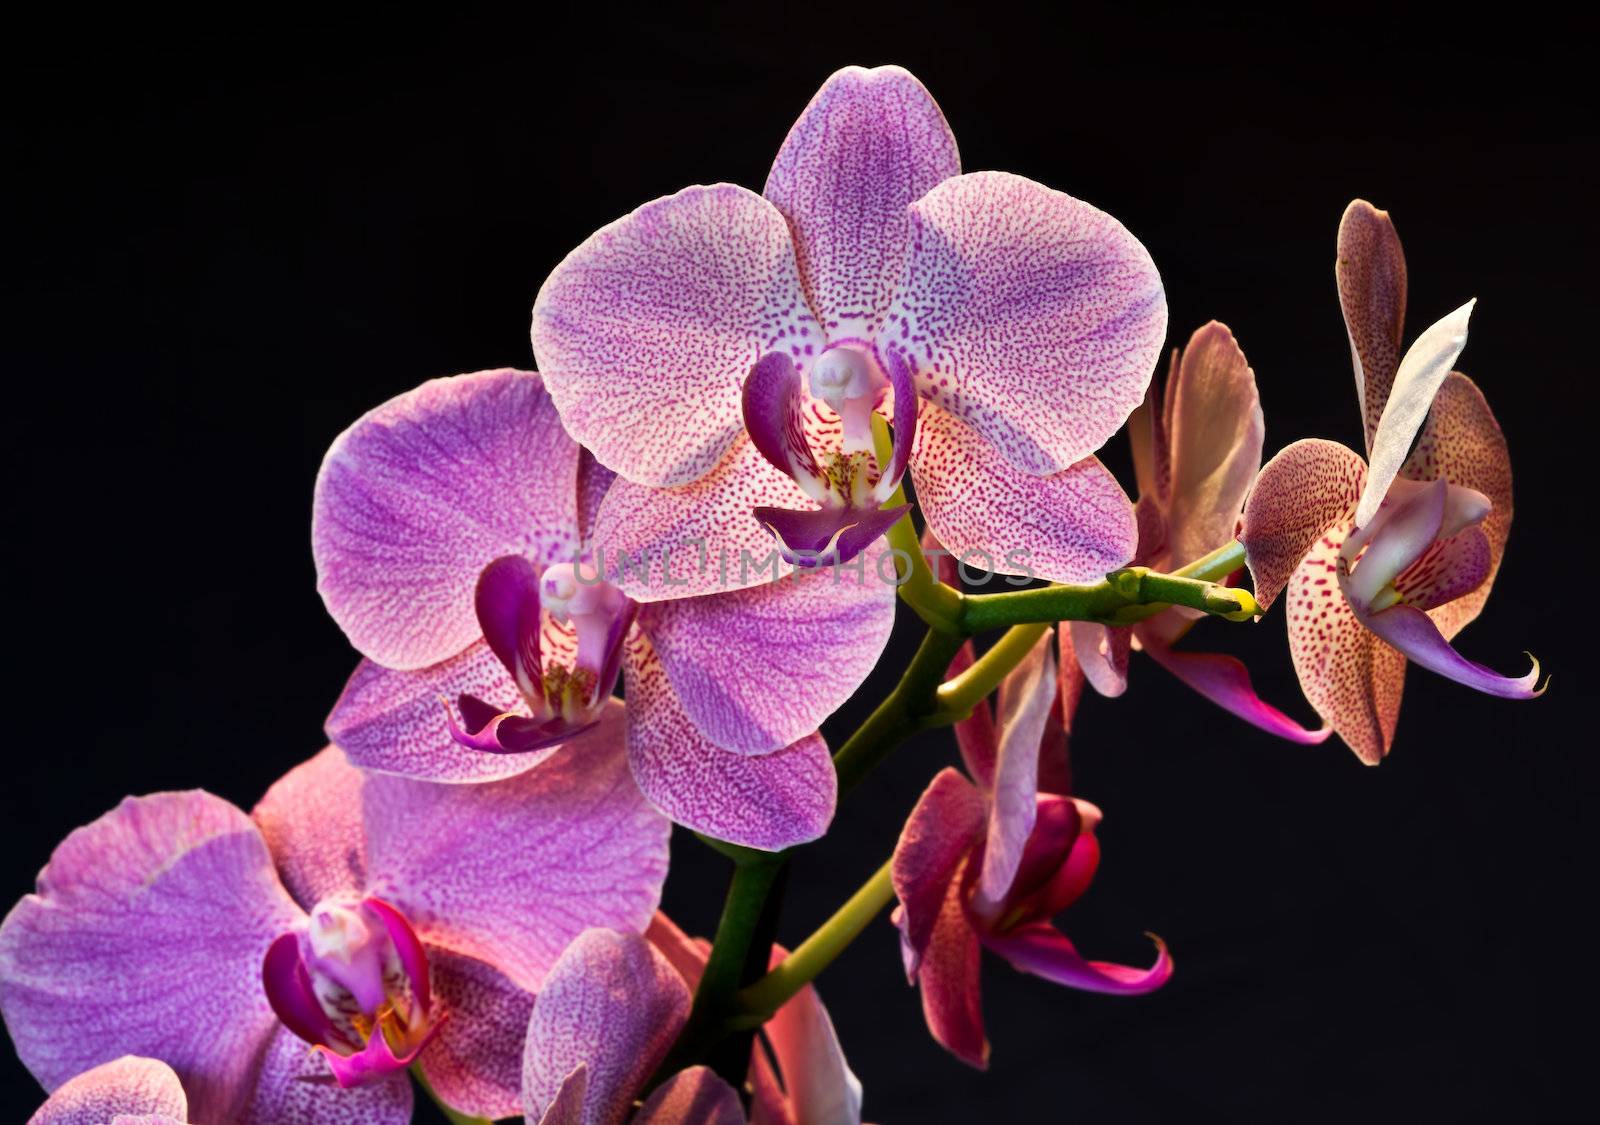 Phalaenopsis. Orchid isolated on black background